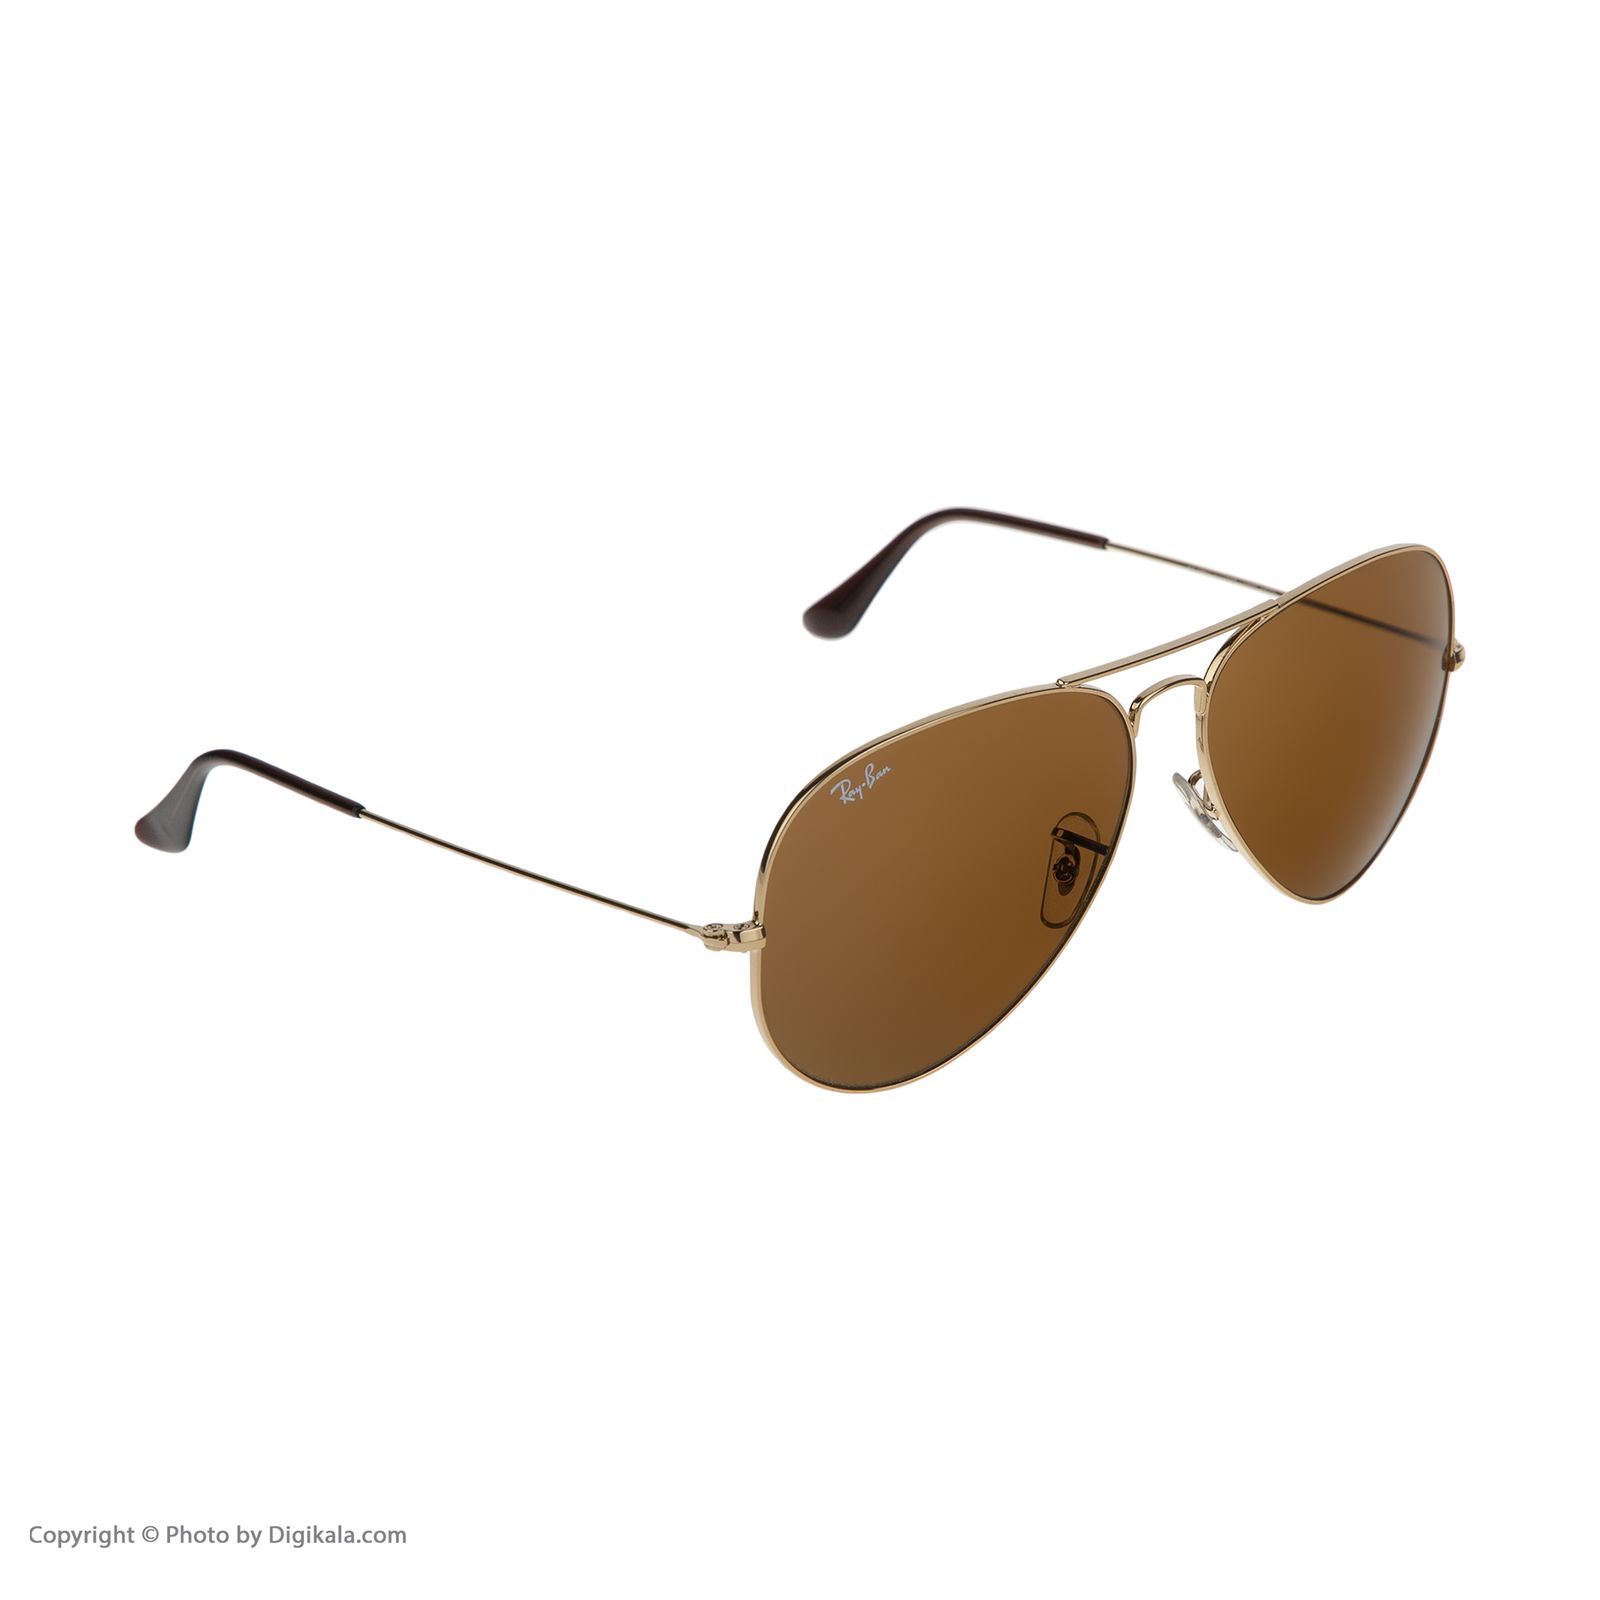 عینک آفتابی ری بن مدل 3025-001/33-58 -  - 7